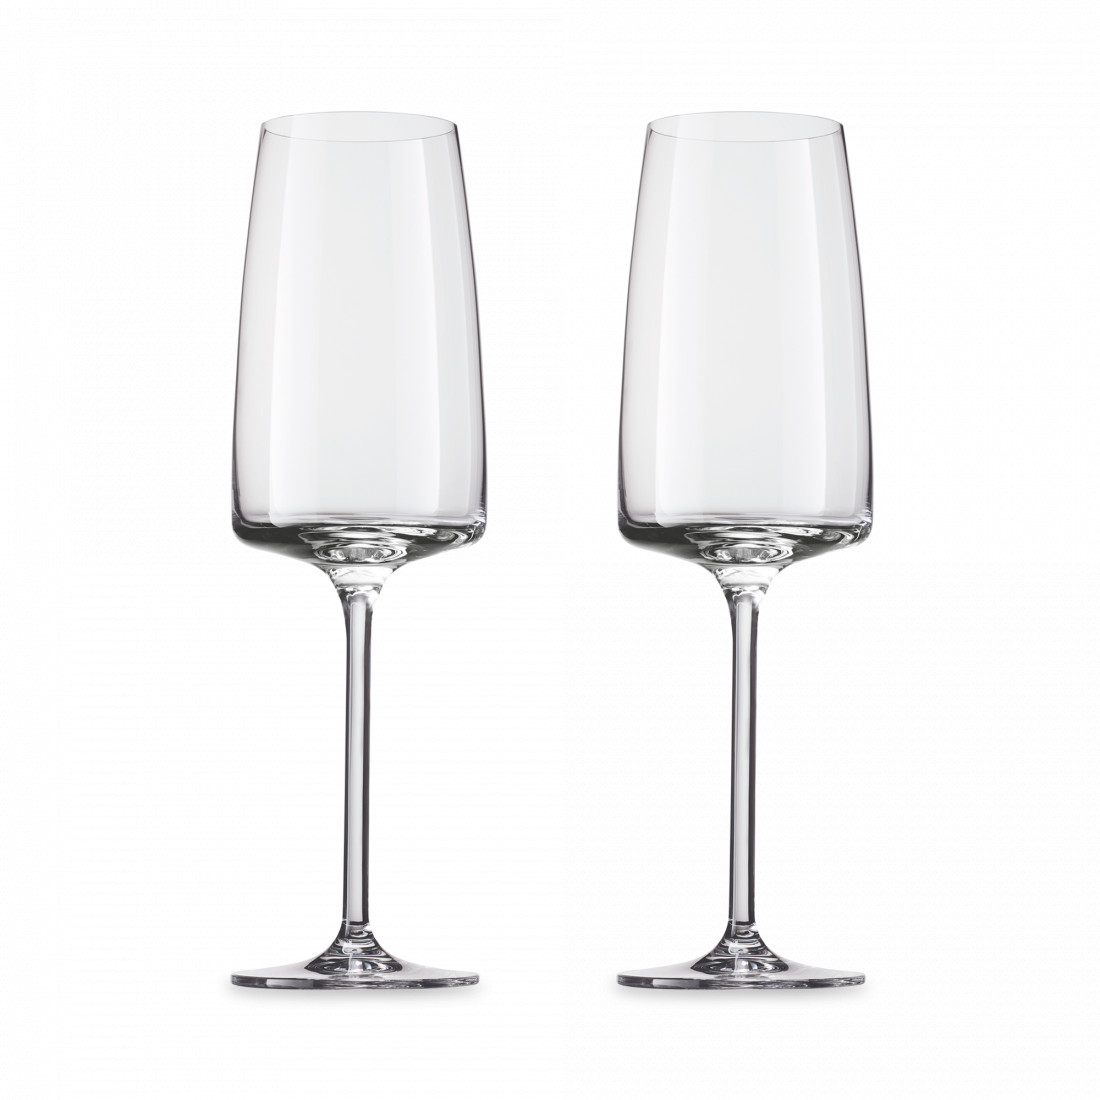 Набор бокалов 2 шт. для игристых вин, 388 мл., Vivid Senses, ZWIESEL GLAS хрустальное стекло